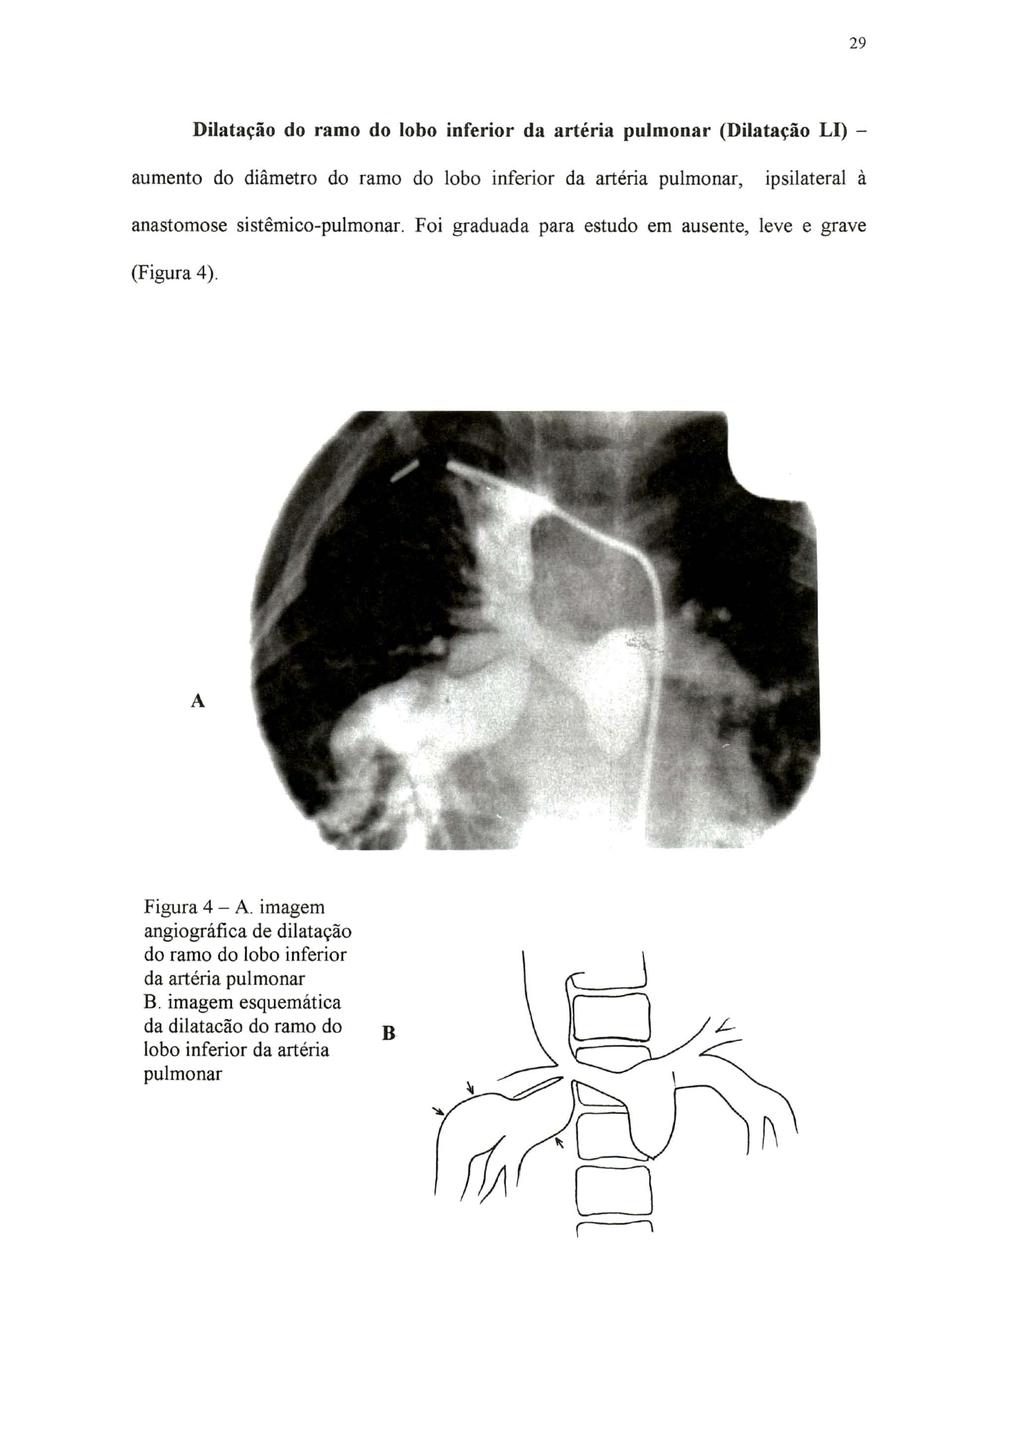 29 Dilatação do ramo do lobo inferior da artéria pulmonar (Dilatação LI) - aumento do diâmetro do ramo do lobo inferior da artéria pulmonar, ipsilateral à anastomose sistêmico-pulmonar.